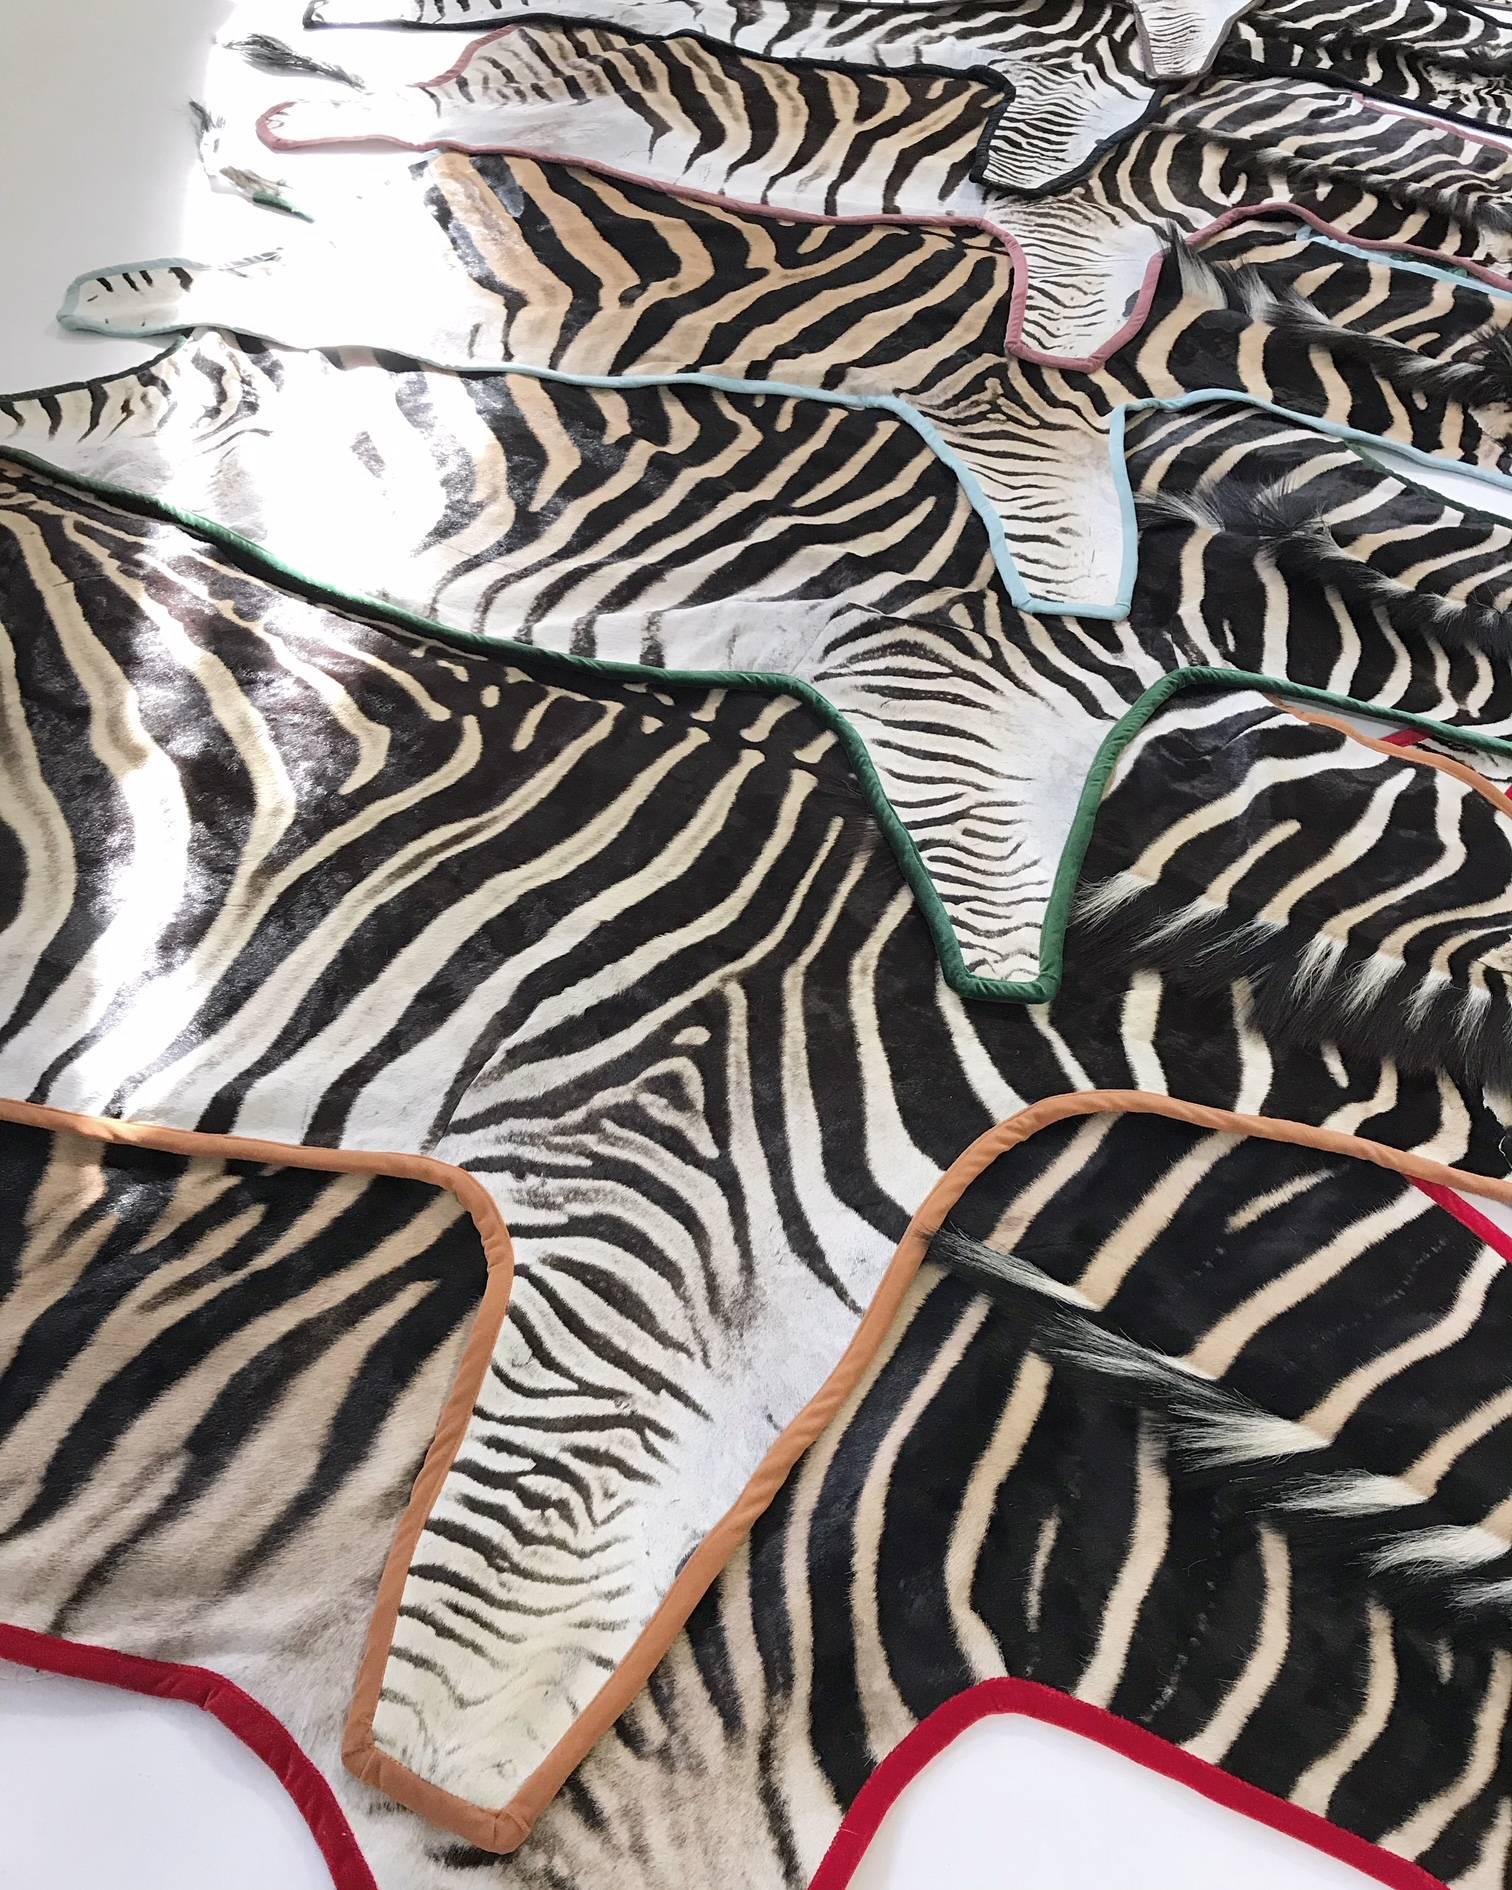 Forsyth Zebra Hide Rug Trimmed in Leather 6